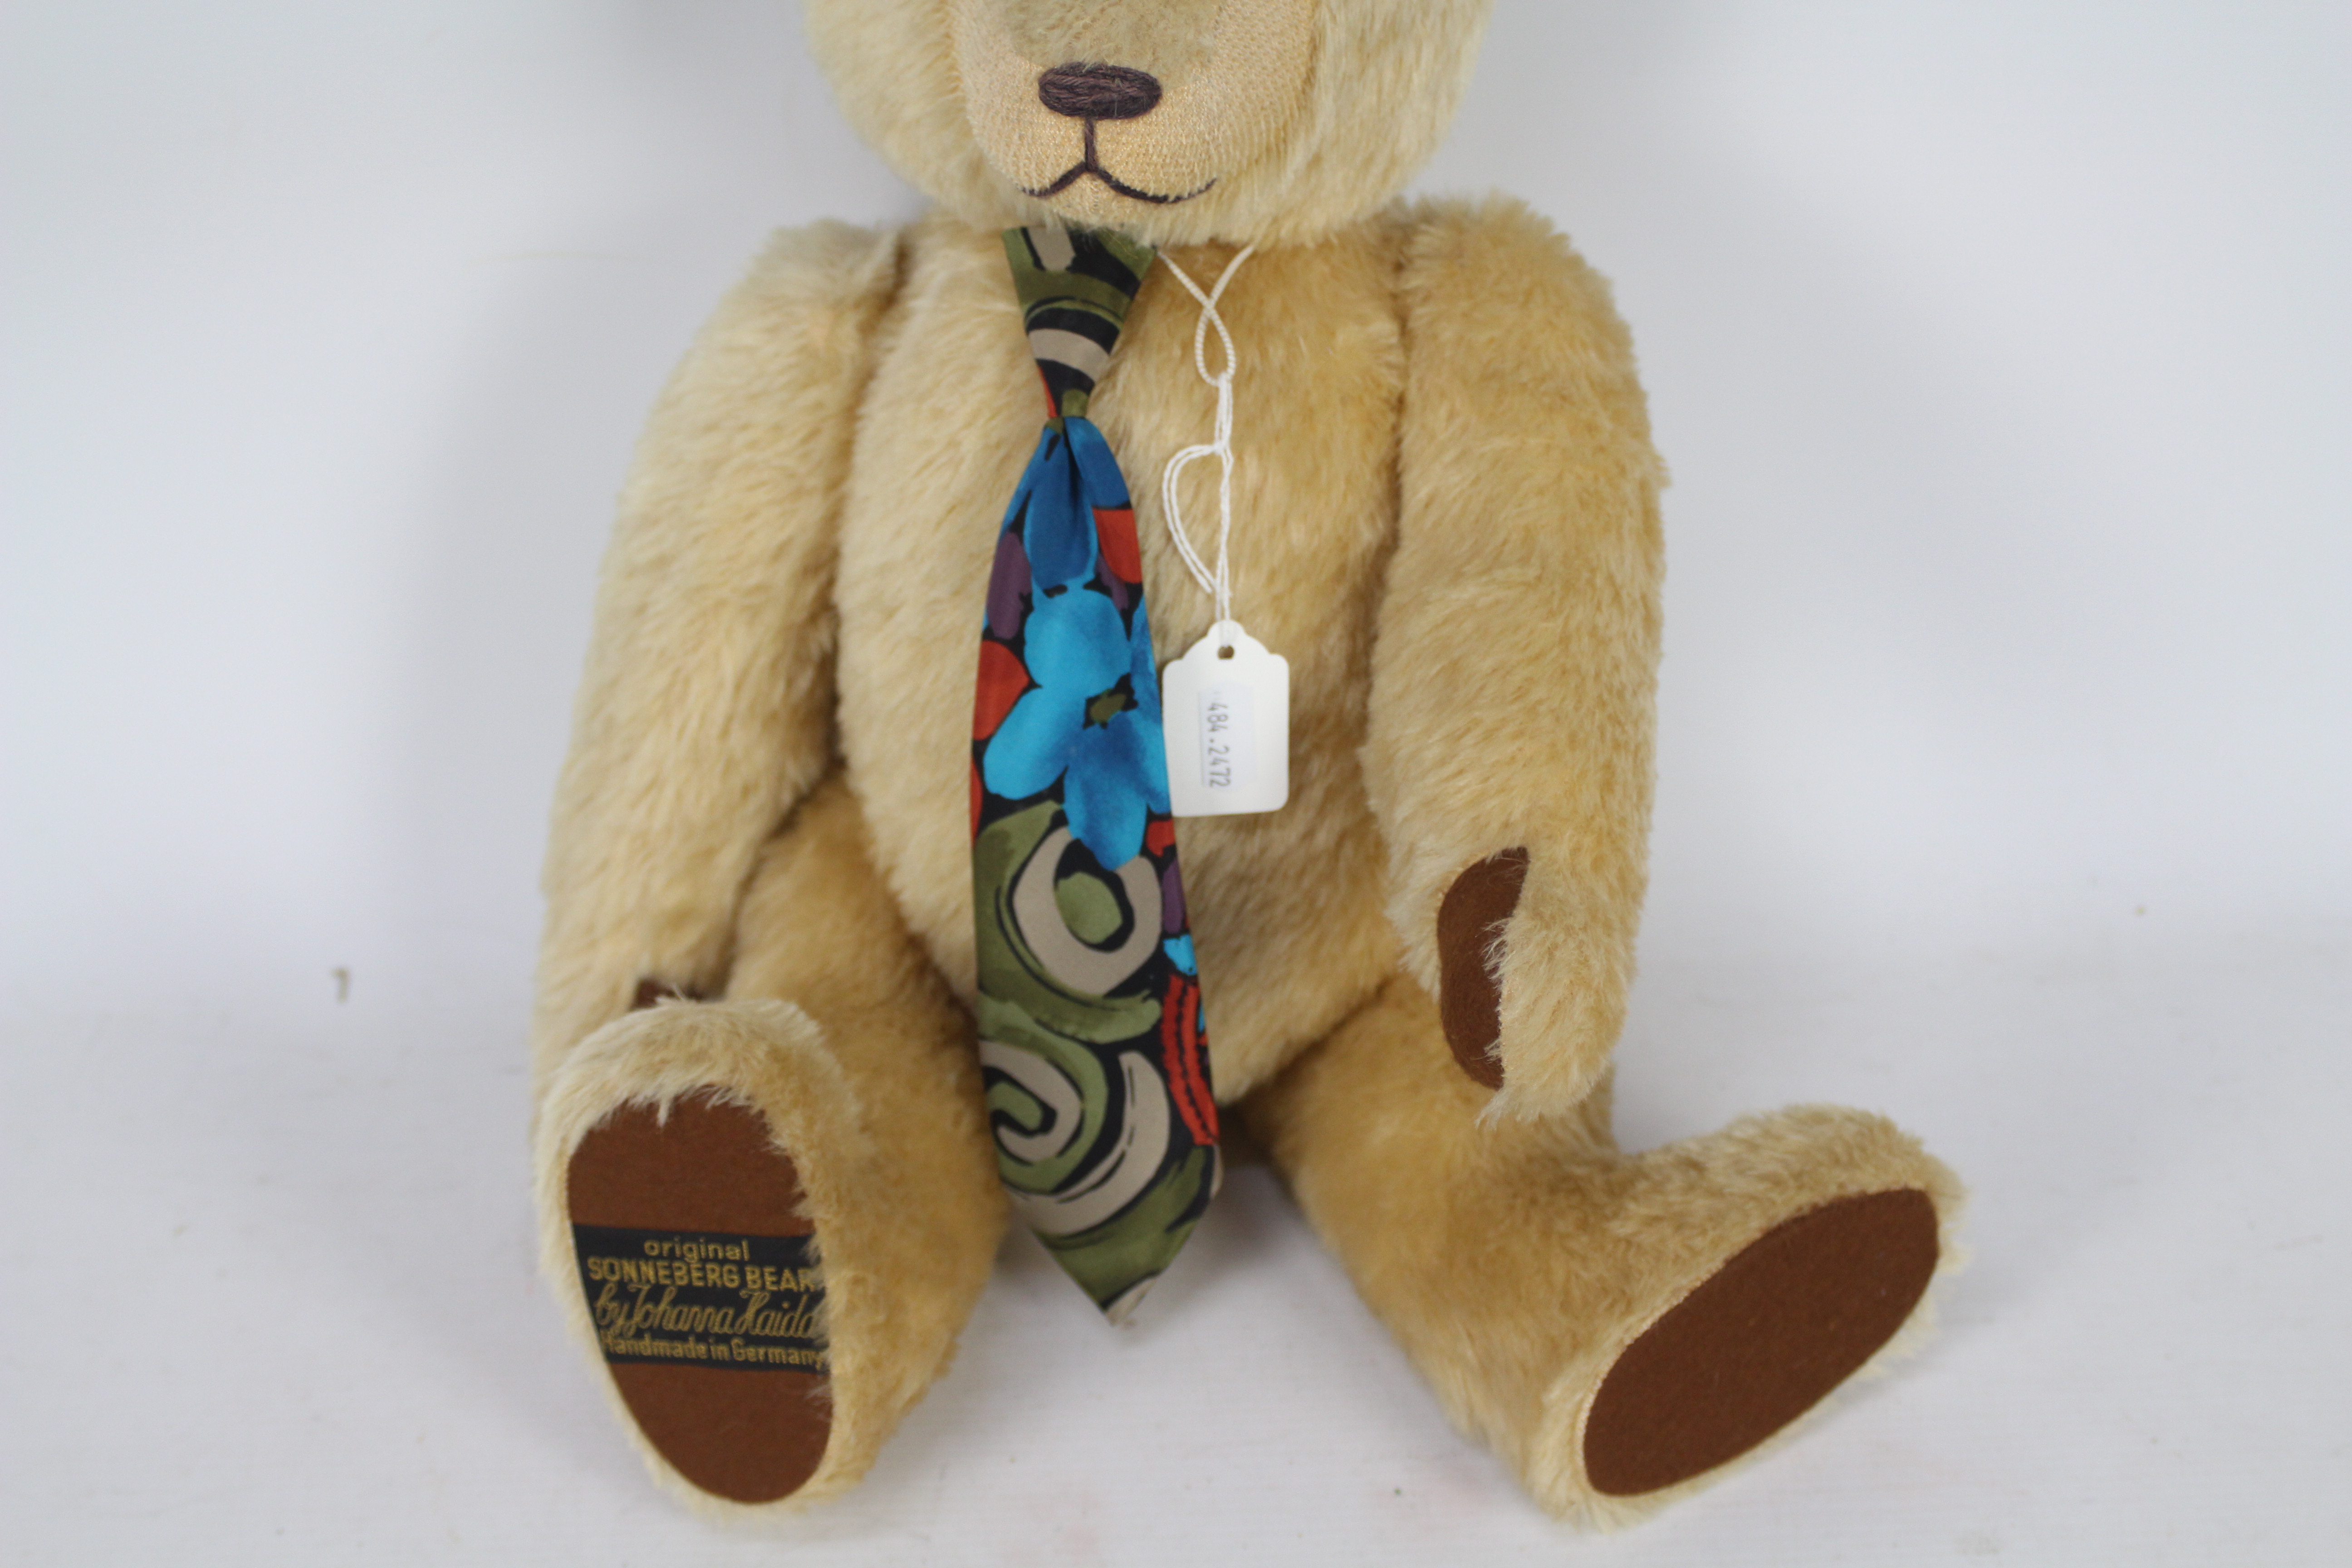 Sonneberg Bear - A blonde mohair teddy bear with growler by Johanna Haida, - Image 3 of 6